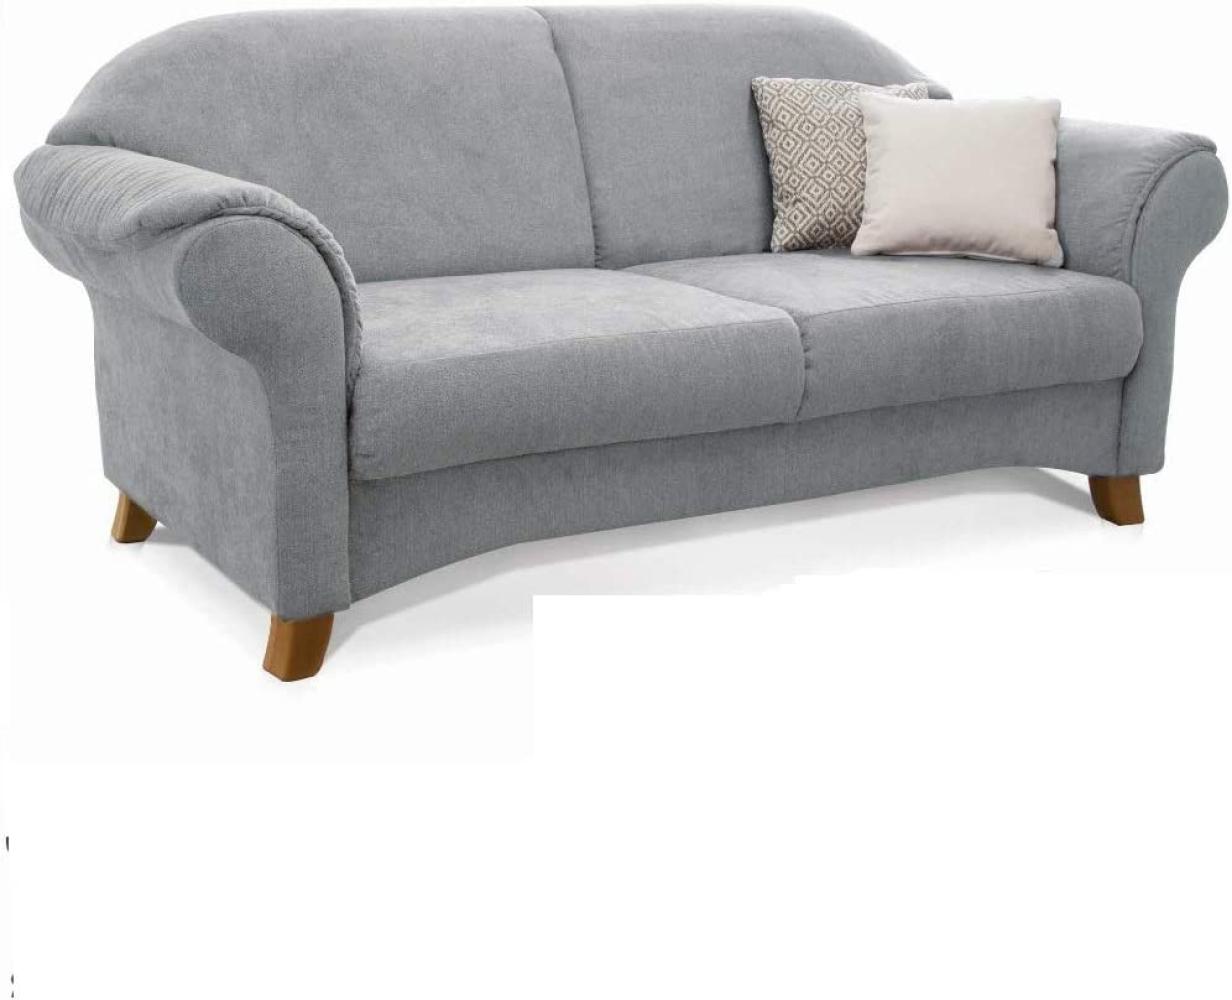 Cavadore 2-Sitzer Sofa Maifayr mit Federkern / Moderne 2-sitzige Couch im Landhausstil mit Holzfüßen / 164 x 90 x 90 / hellgrau Bild 1